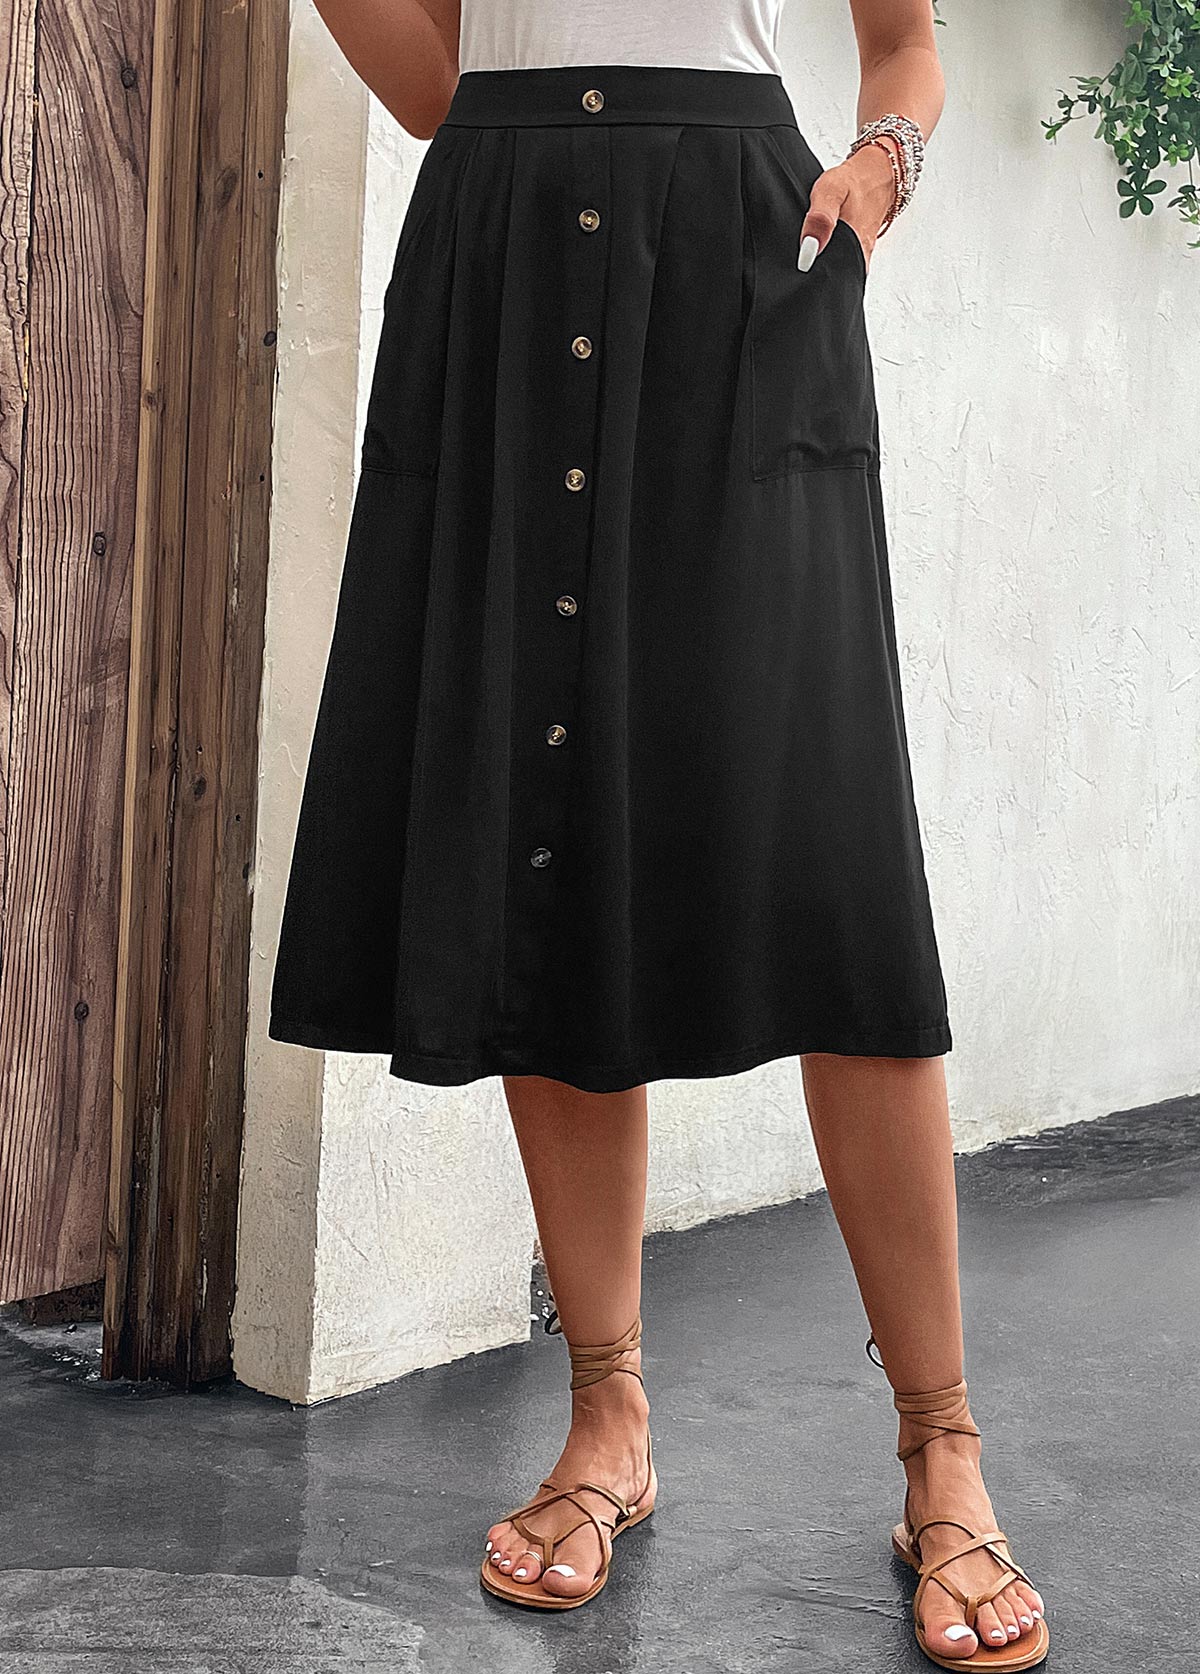 Black Button A Line Elastic Waist Skirt | modlily.com - USD 26.98